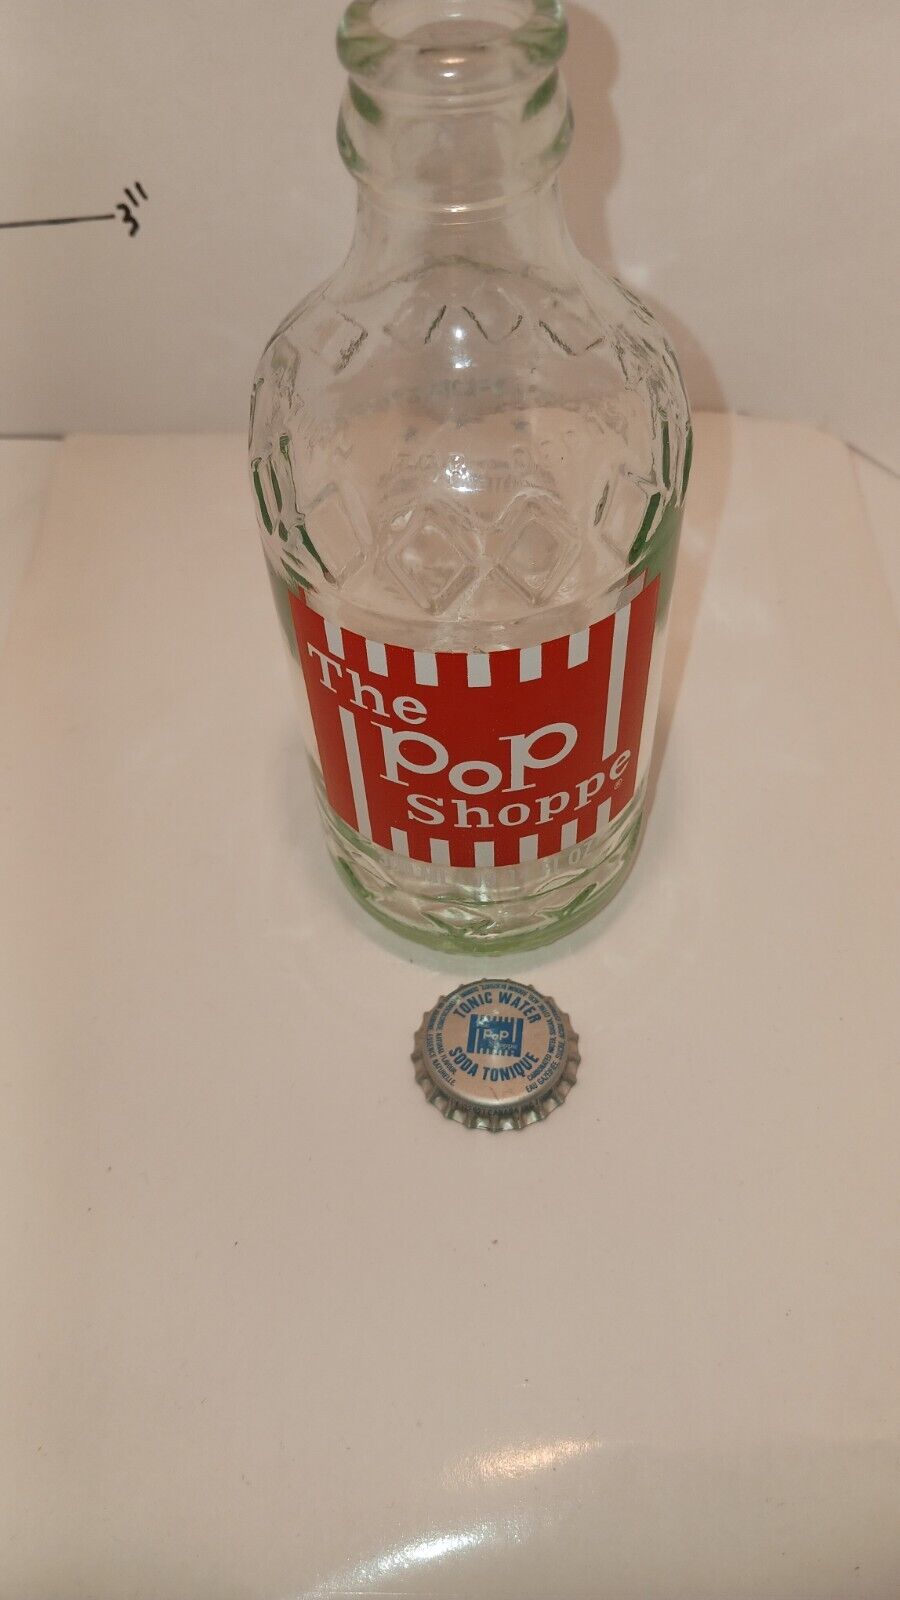 Tonic Water Bottle Cap + ACL Soda Bottle Vintage Pop Shoppe Beverages 